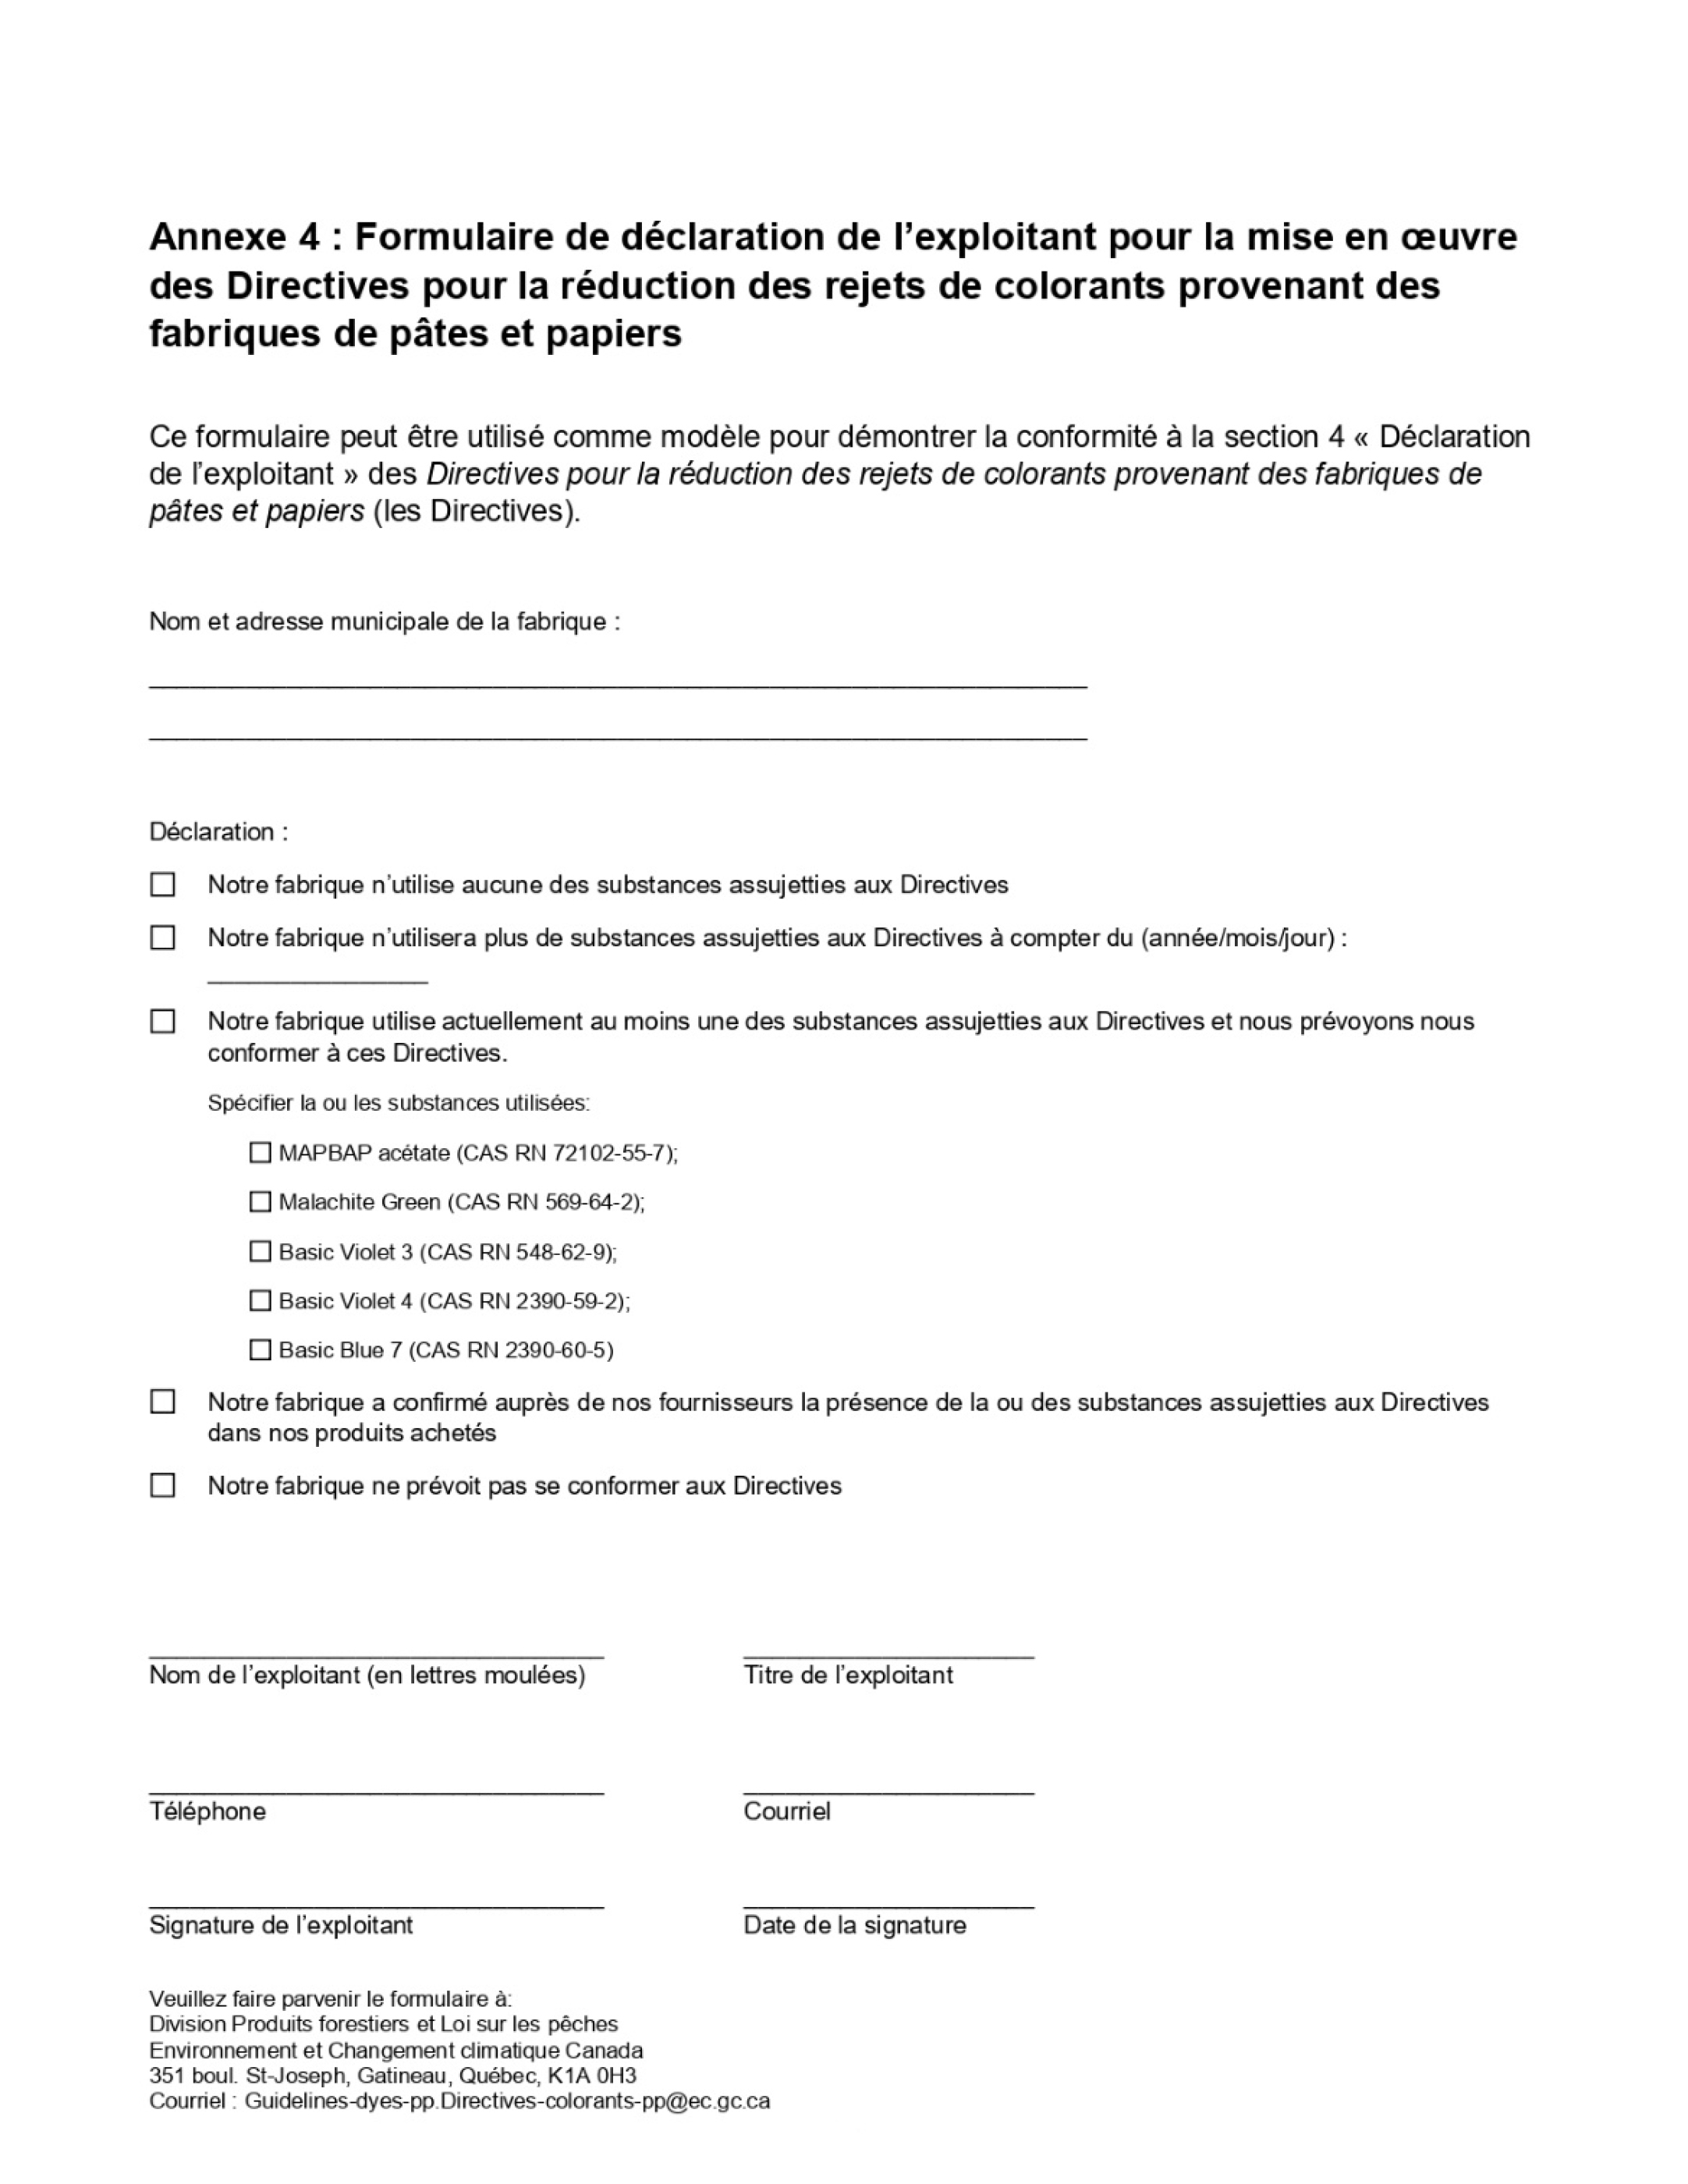 Annexe 4 Exemple du Formulaire de déclaration de l’exploitant – Version textuelle en dessous de l'image